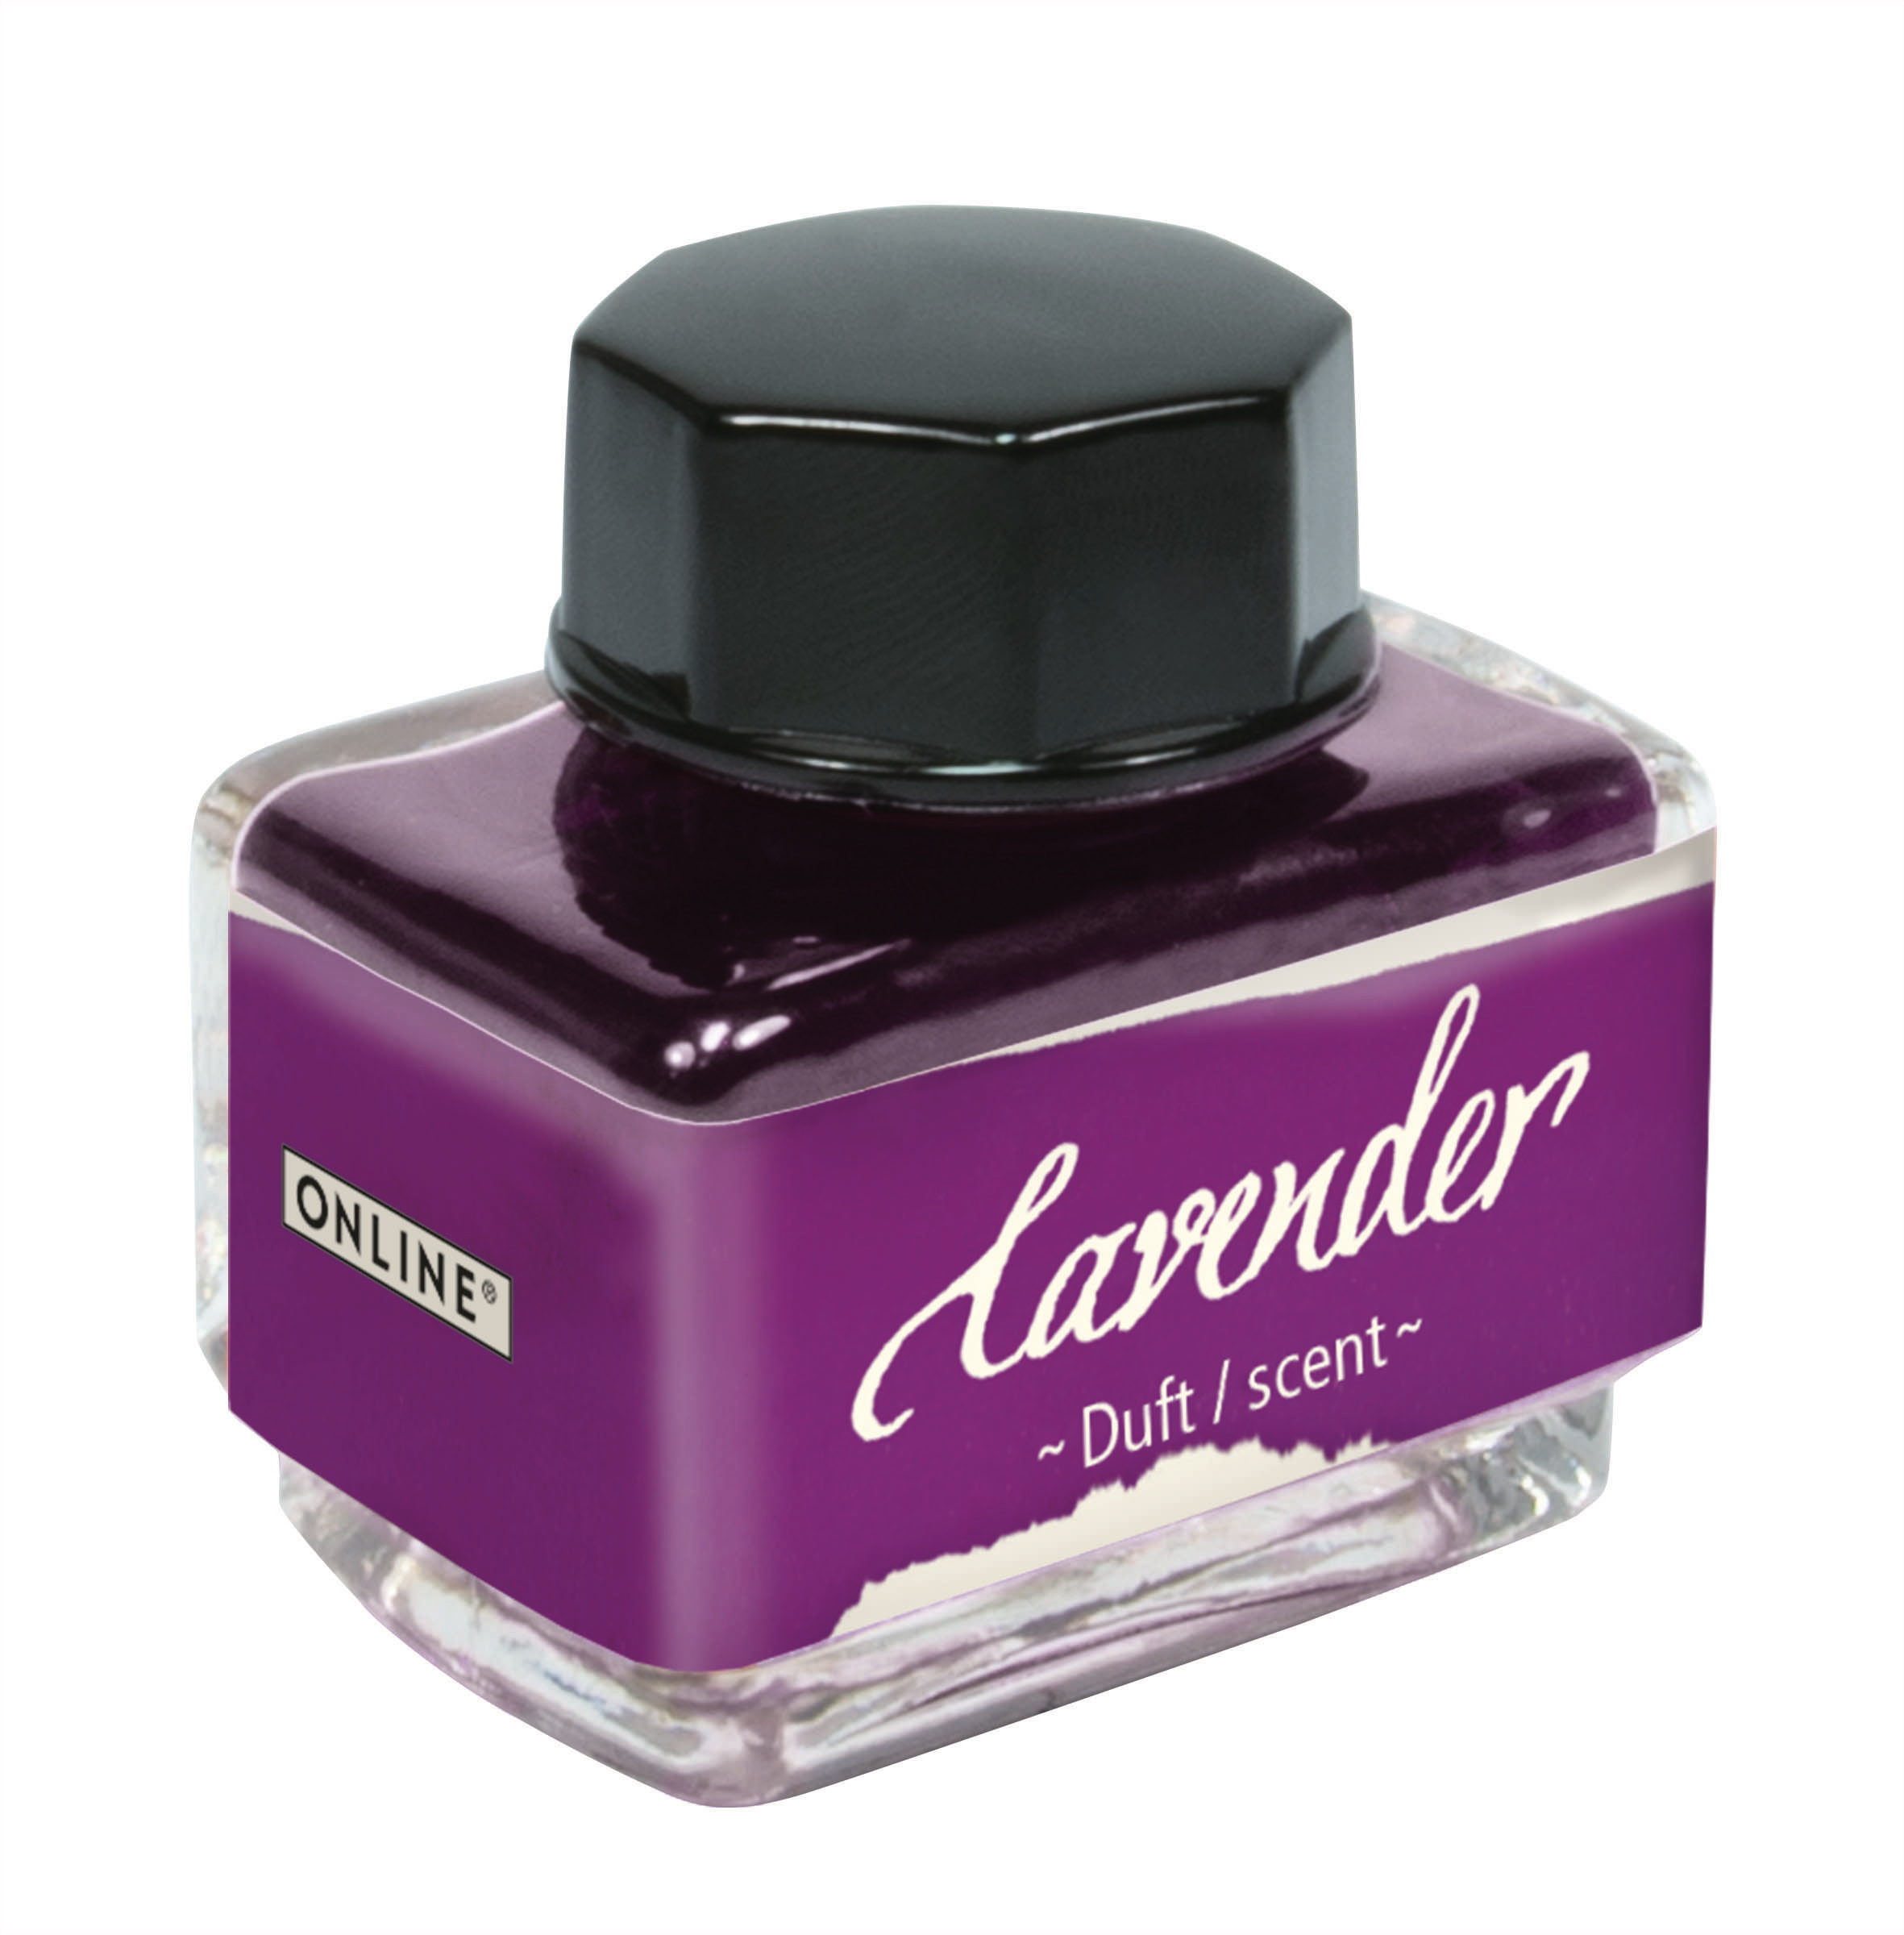 ONLINE Encre 15ml 17064/3 fleurer Lavender, lilac